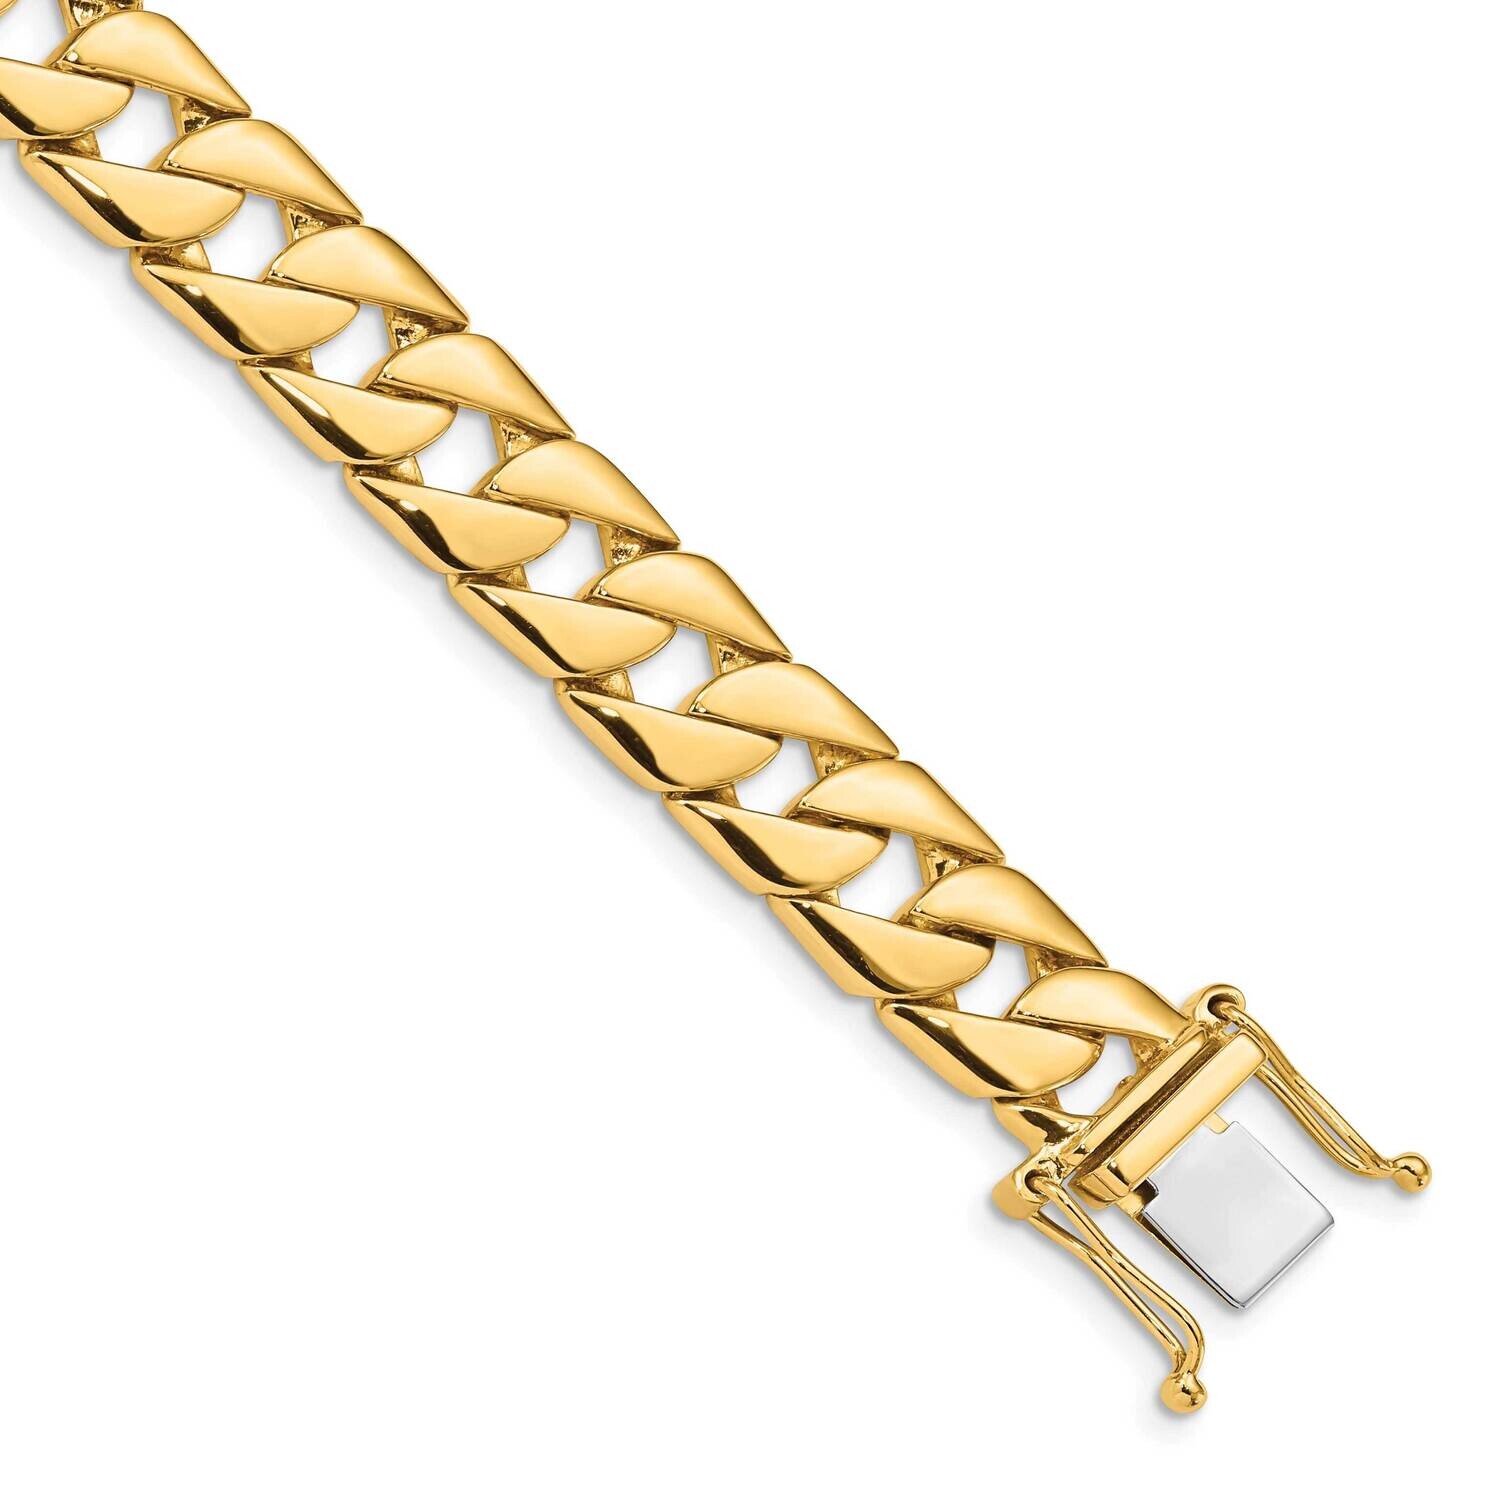 10.2mm Hand-Polished Fancy Link Bracelet 8 Inch 10k Gold 10LK141-8